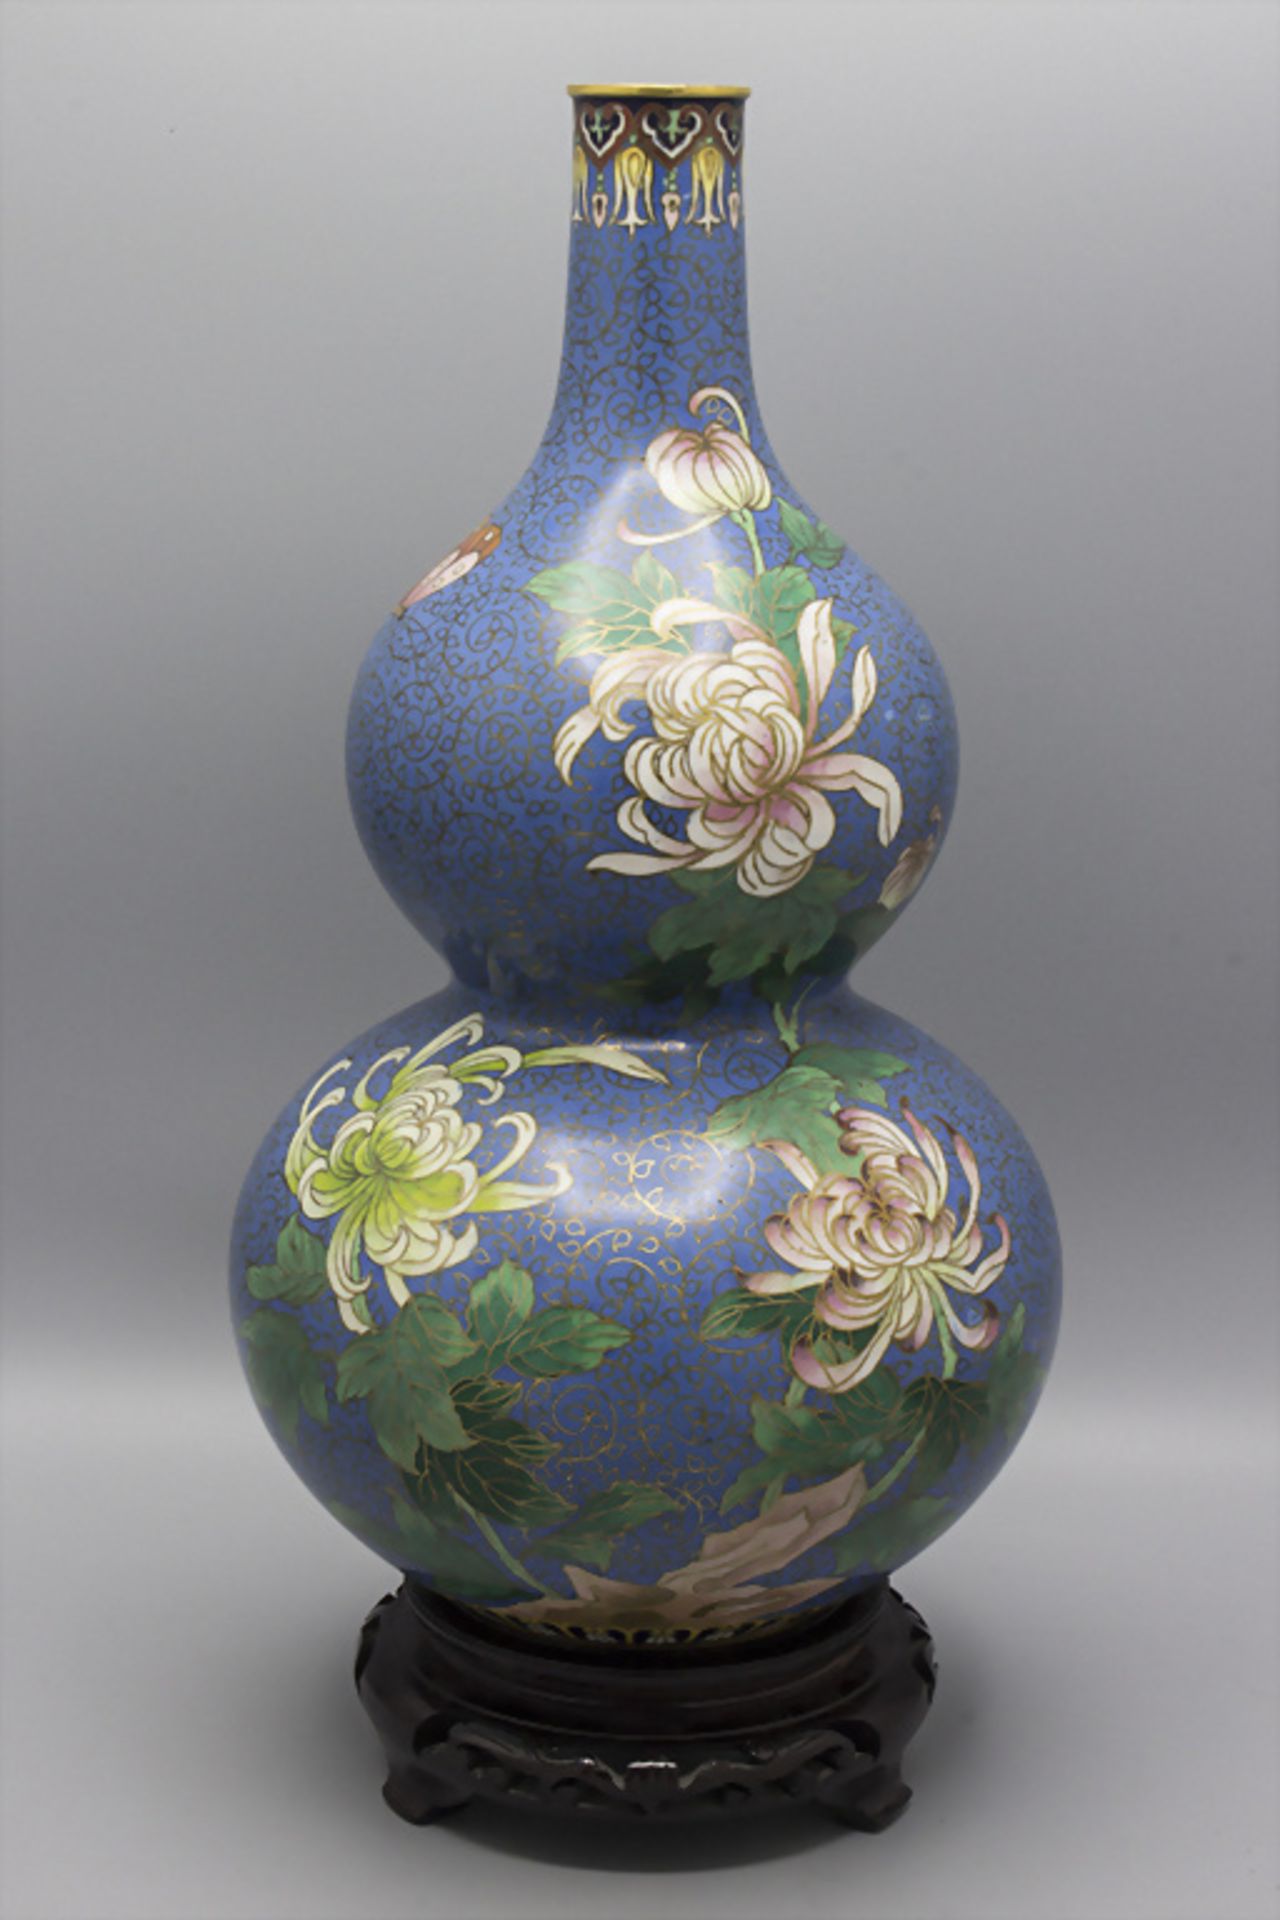 Cloisonné-Vase mit floralem Dekor / A Cloisonné vase with floral decor, um 1900